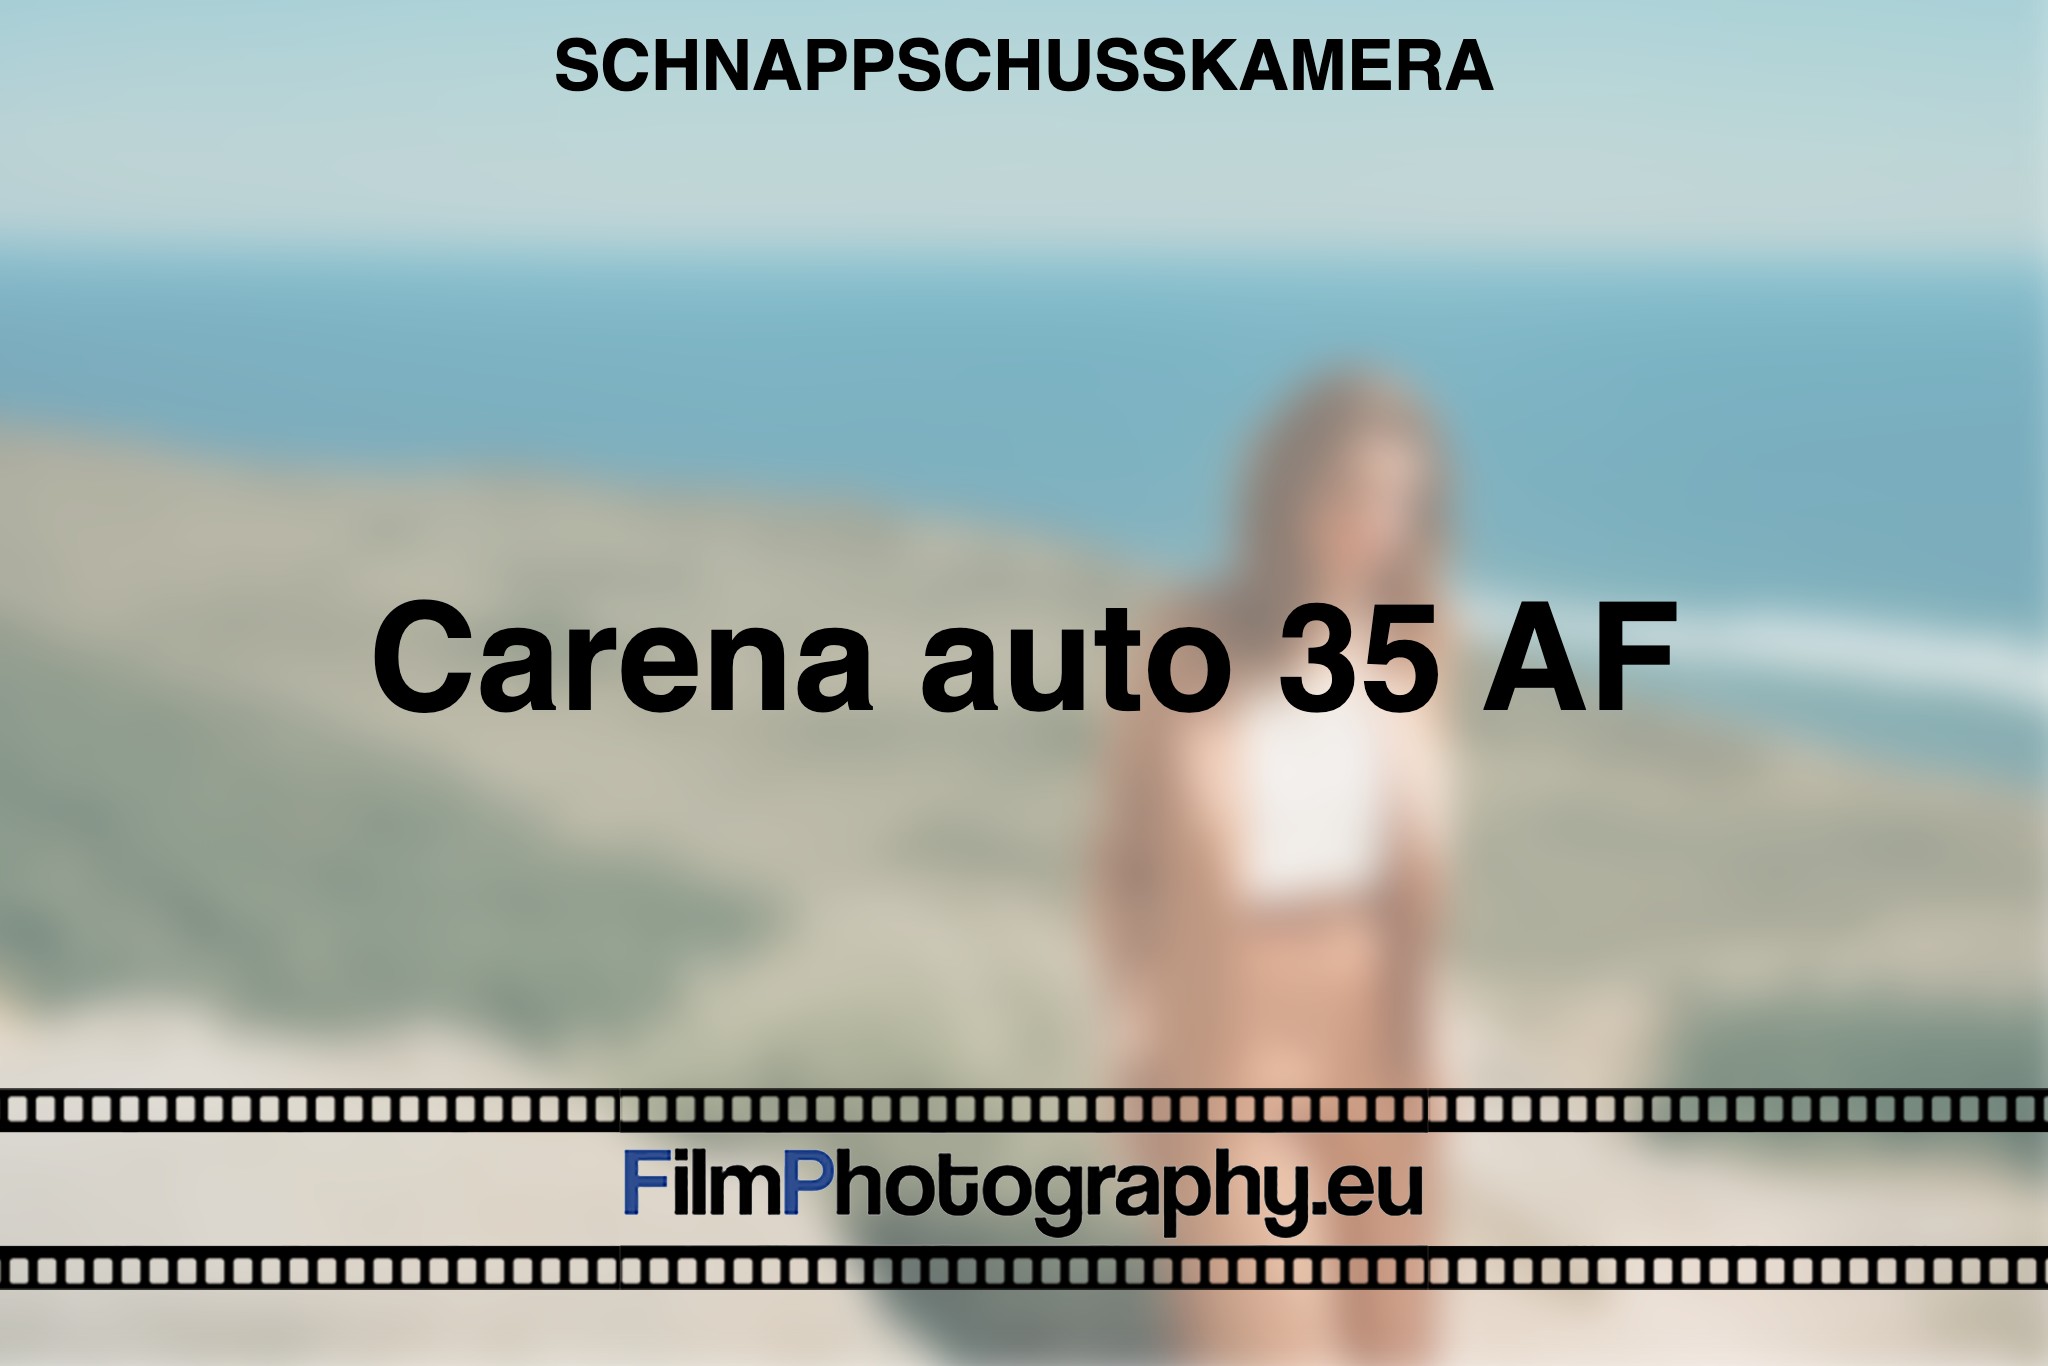 carena-auto-35-af-schnappschusskamera-bnv